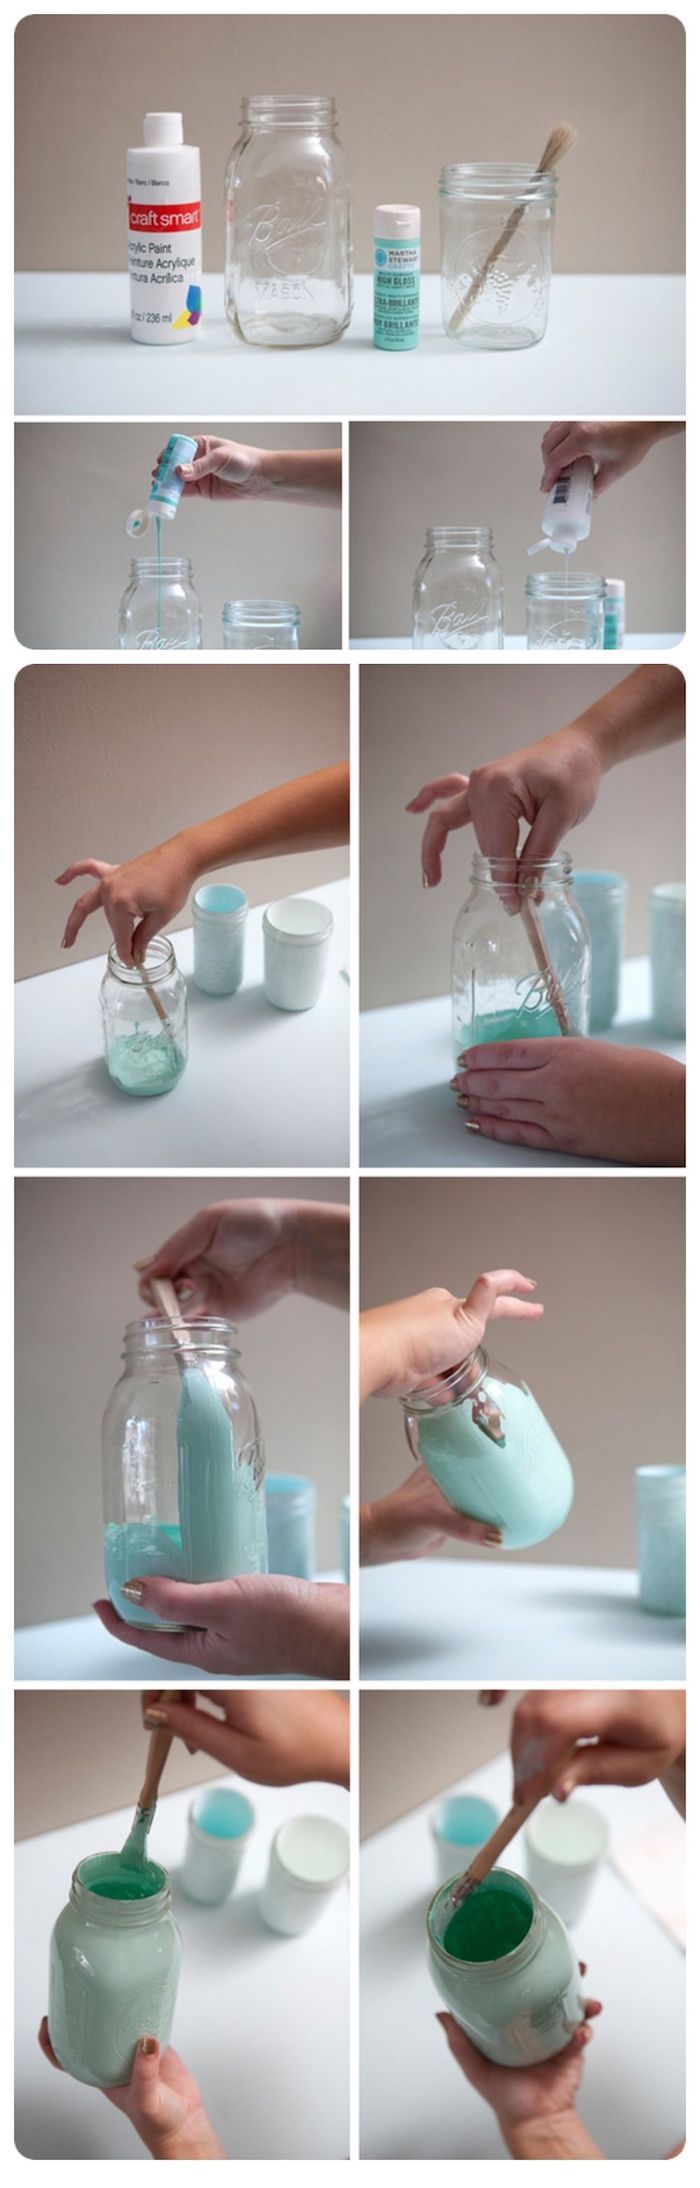 badezimmer deko diy vasen aus einmachgläser blaue farbe upcycling ideen pinsel shabby chic stil